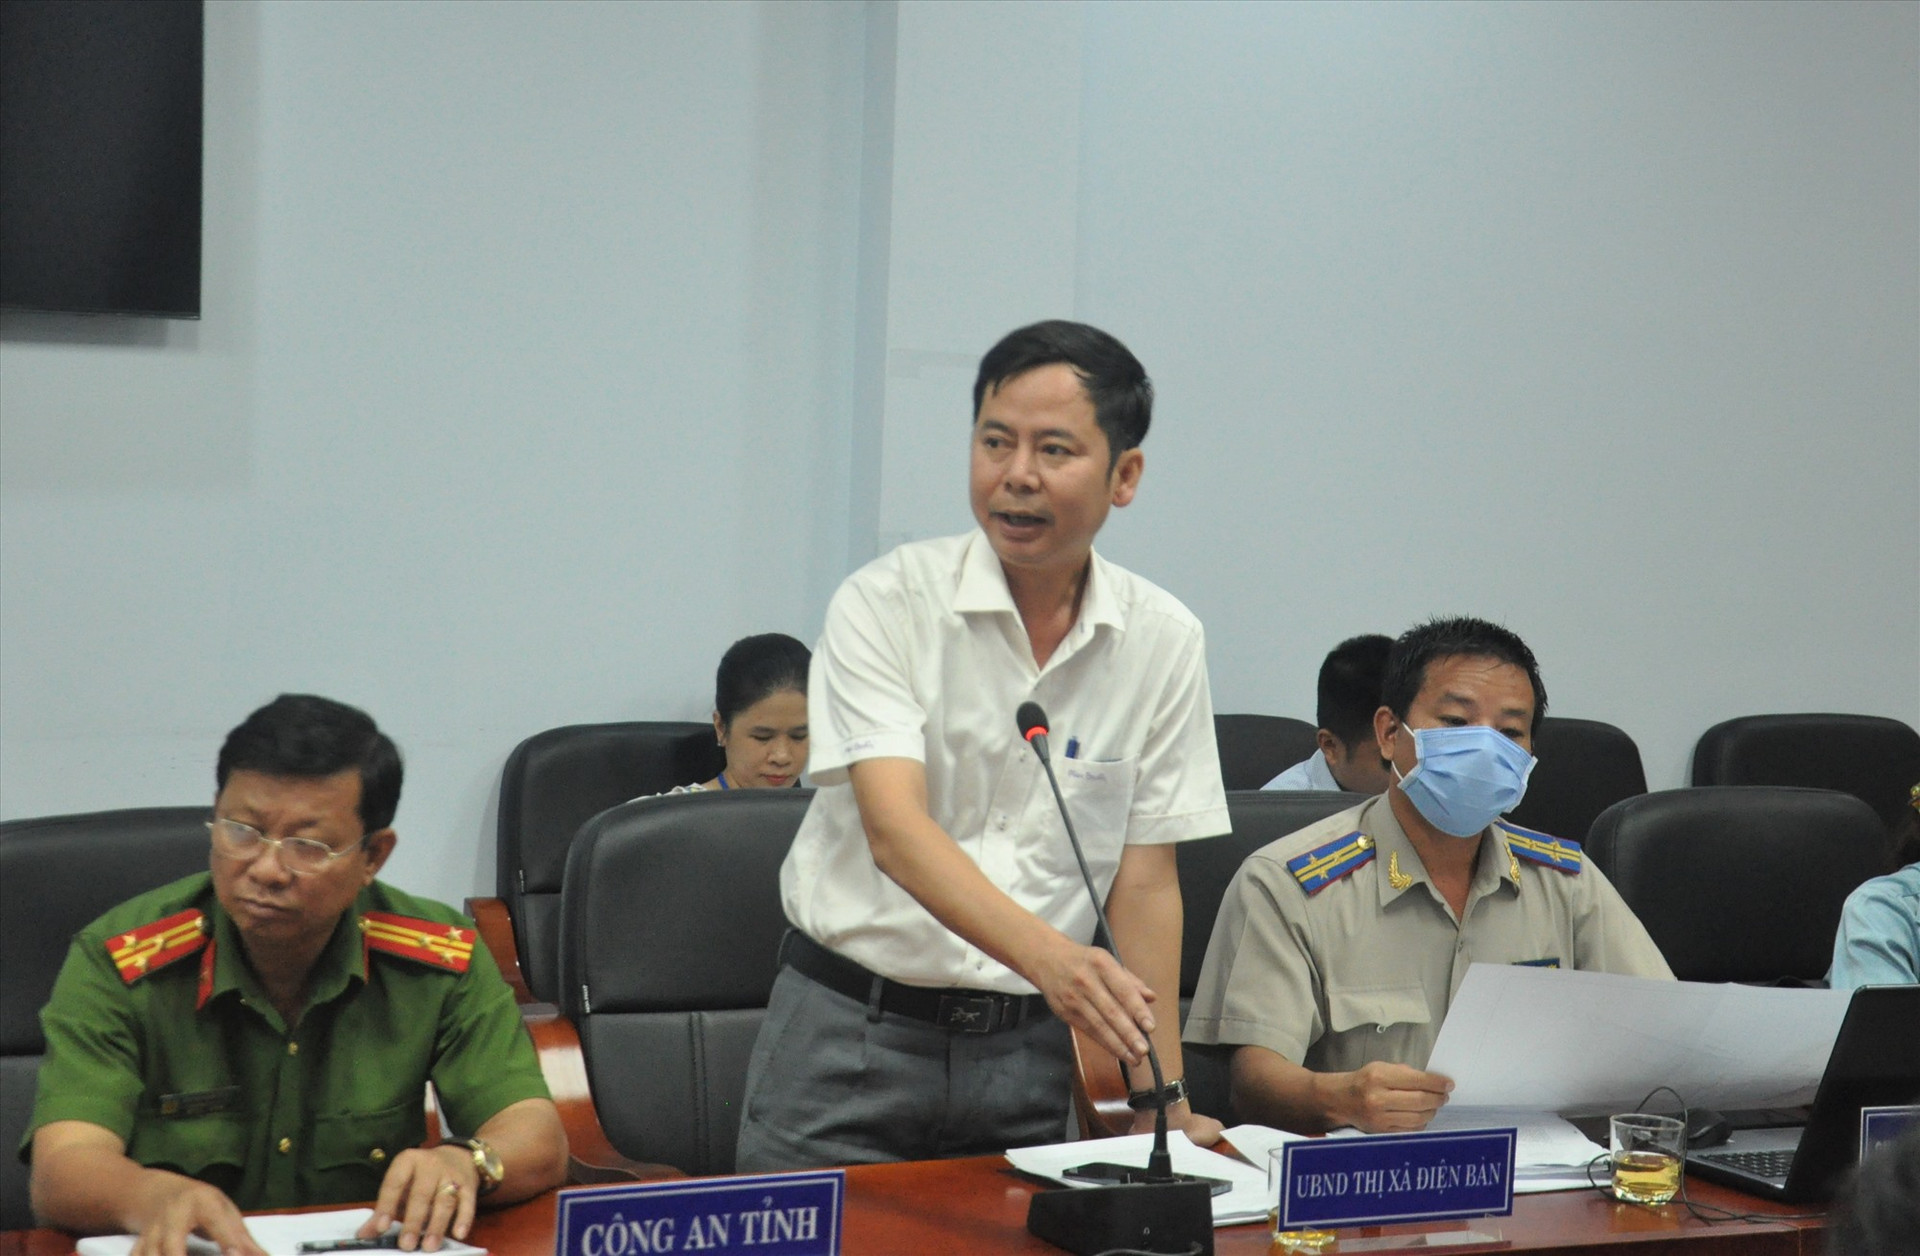 Ông Nguyễn Xuân Hà - Phó Chủ tịch UBND thị xã Điện Bàn thông tin về các dự án. Ảnh: X.P